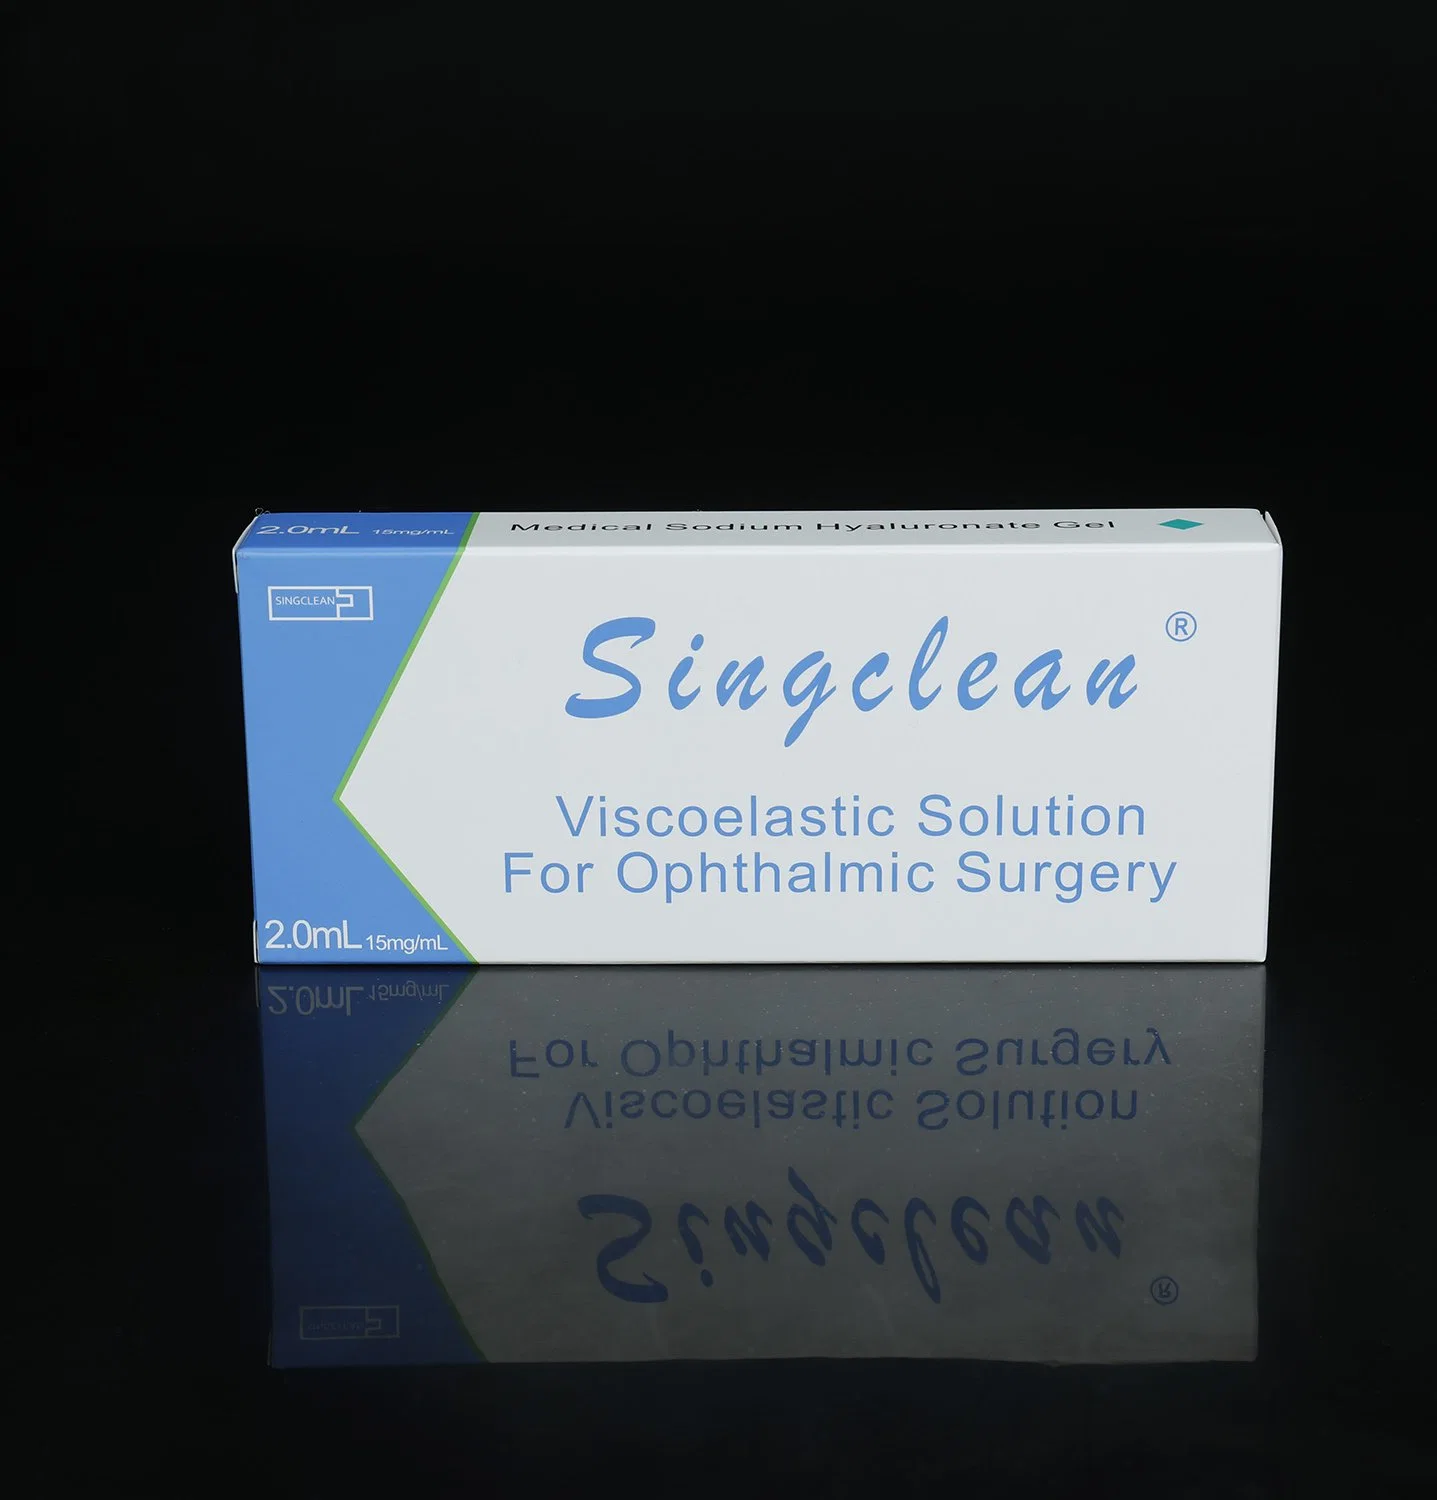 Medical Sodium Hyaluronate Biofermented Singclean Eye Viscoelastic Hyaluronic Acid Gel